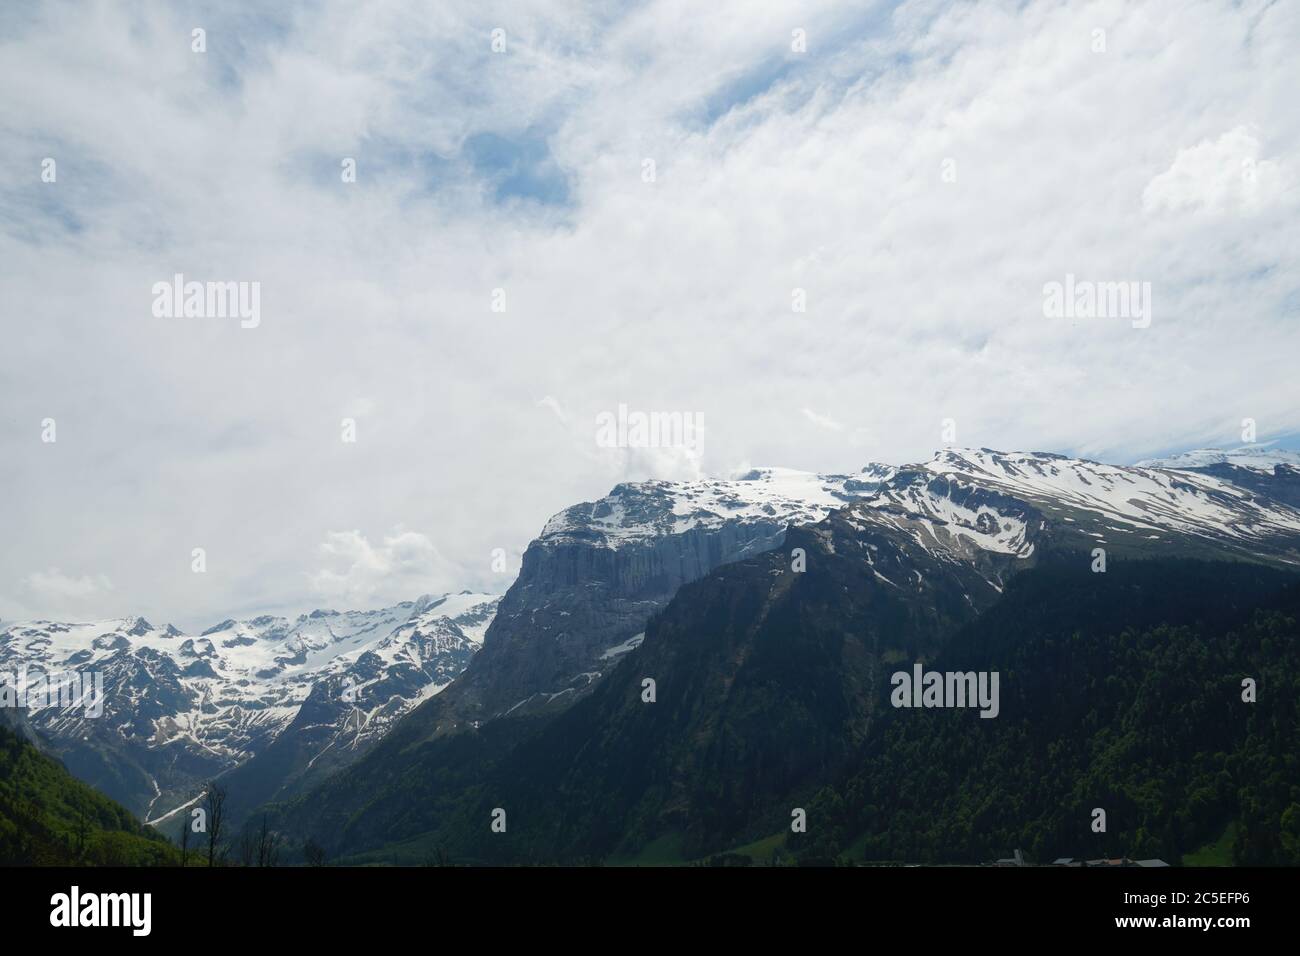 Piste alpine parzialmente innevate in primavera nel cantone di Obvaldo in Svizzera, Engelberg. La catena montuosa è sullo sfondo. Foto Stock